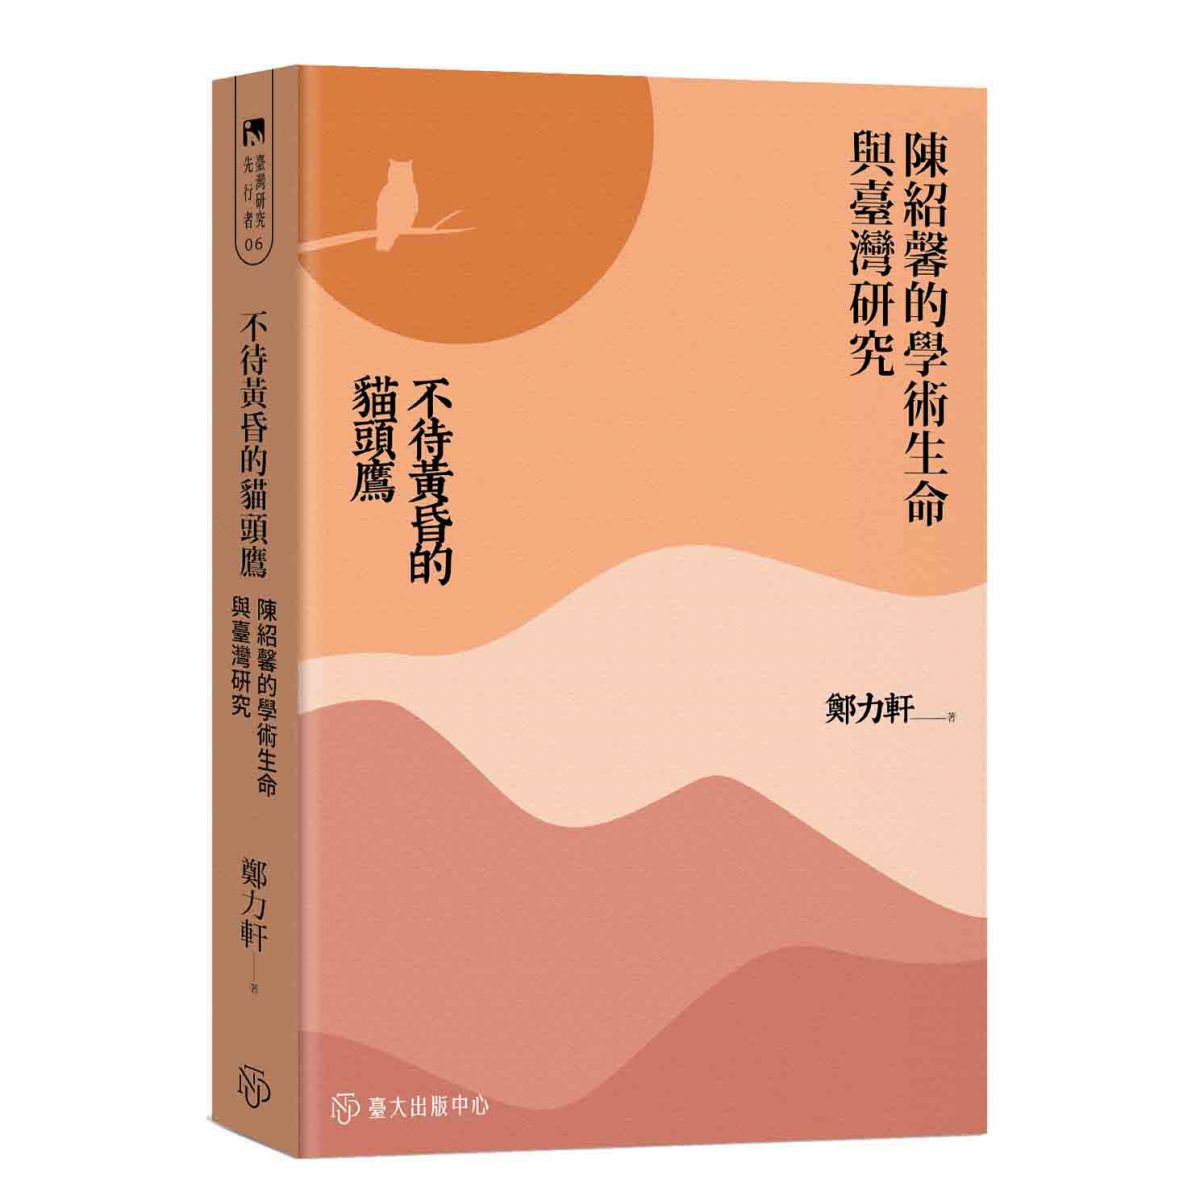 《不待黃昏的貓頭鷹》追索陳紹馨橫跨多重知識場域的學術生命